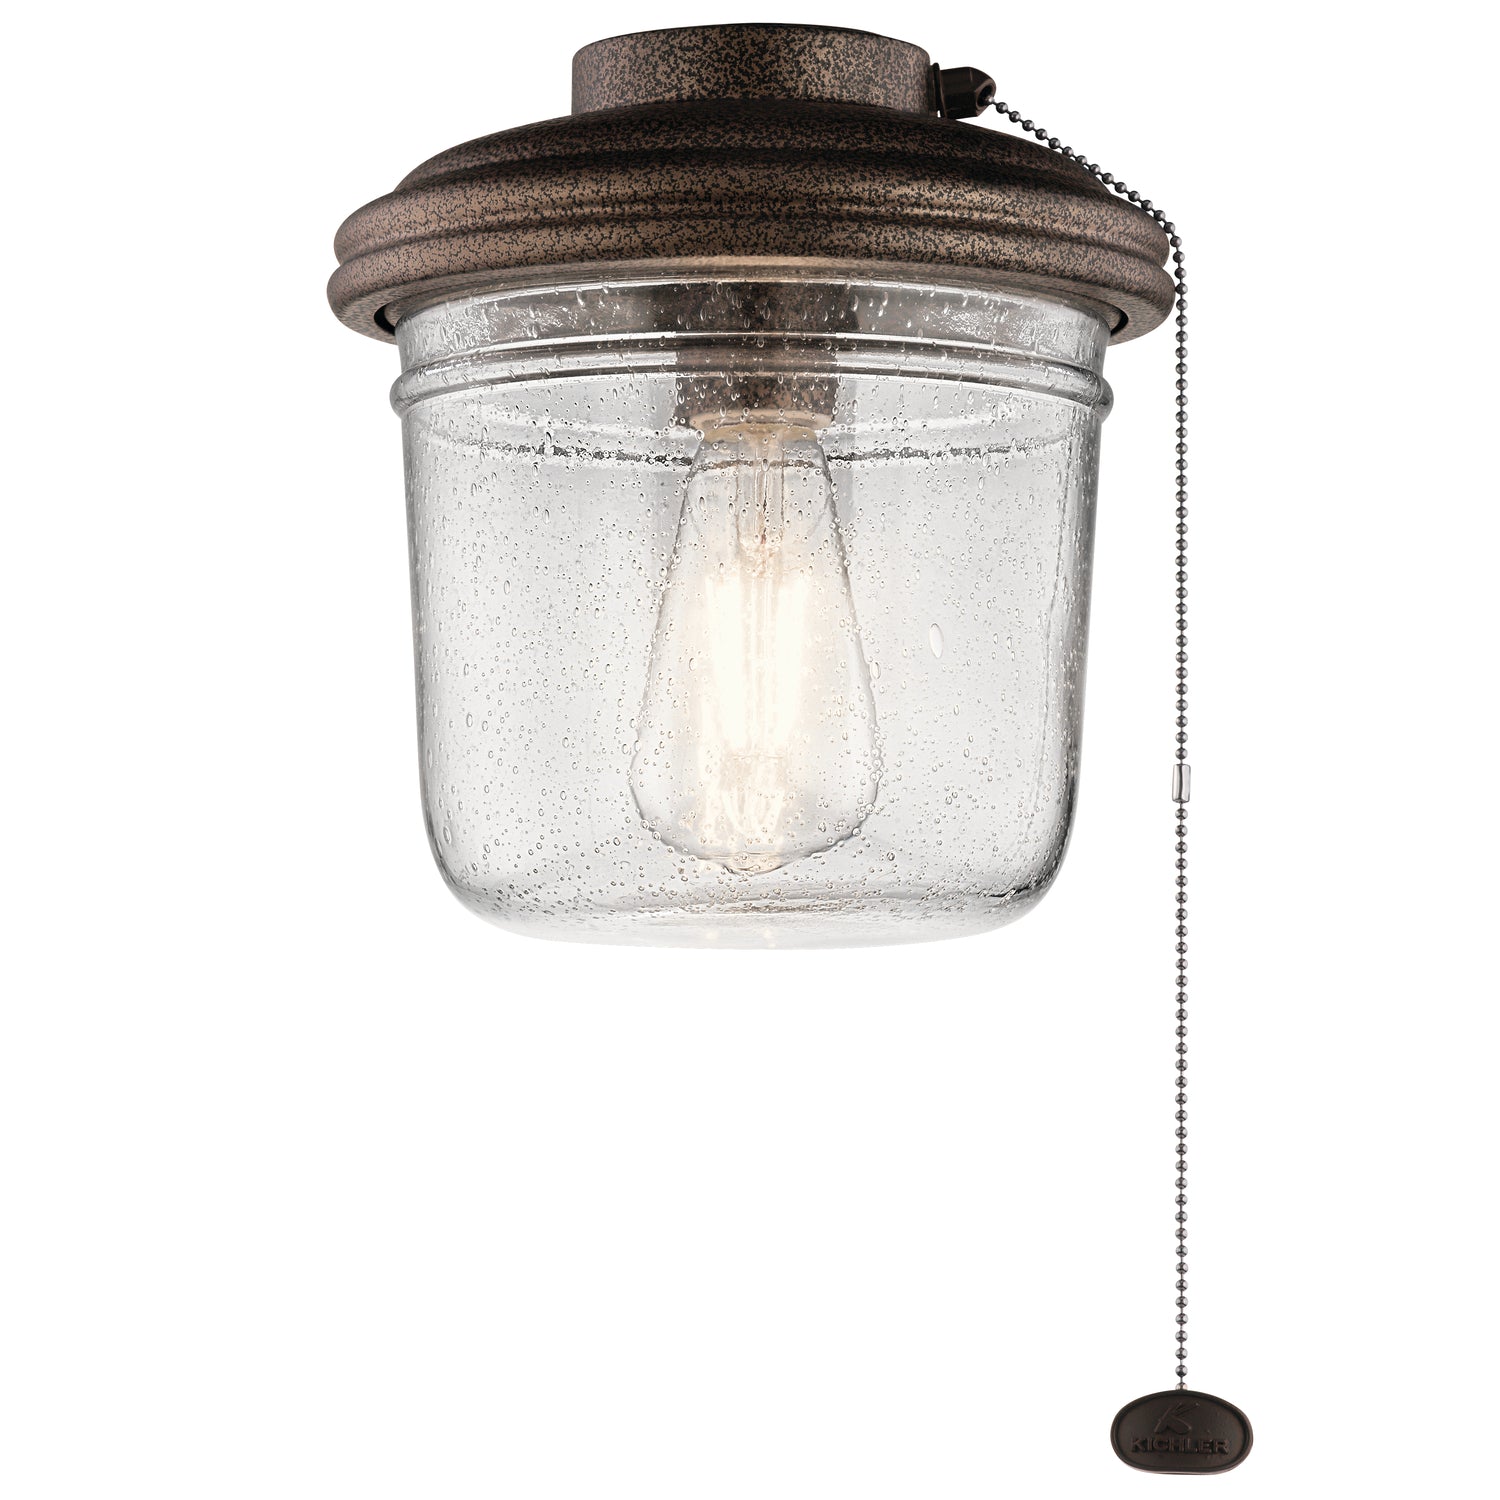 Kichler Canada - LED Fan Light Kit - Yorke - Weathered Copper Powder Coat- Union Lighting Luminaires Decor